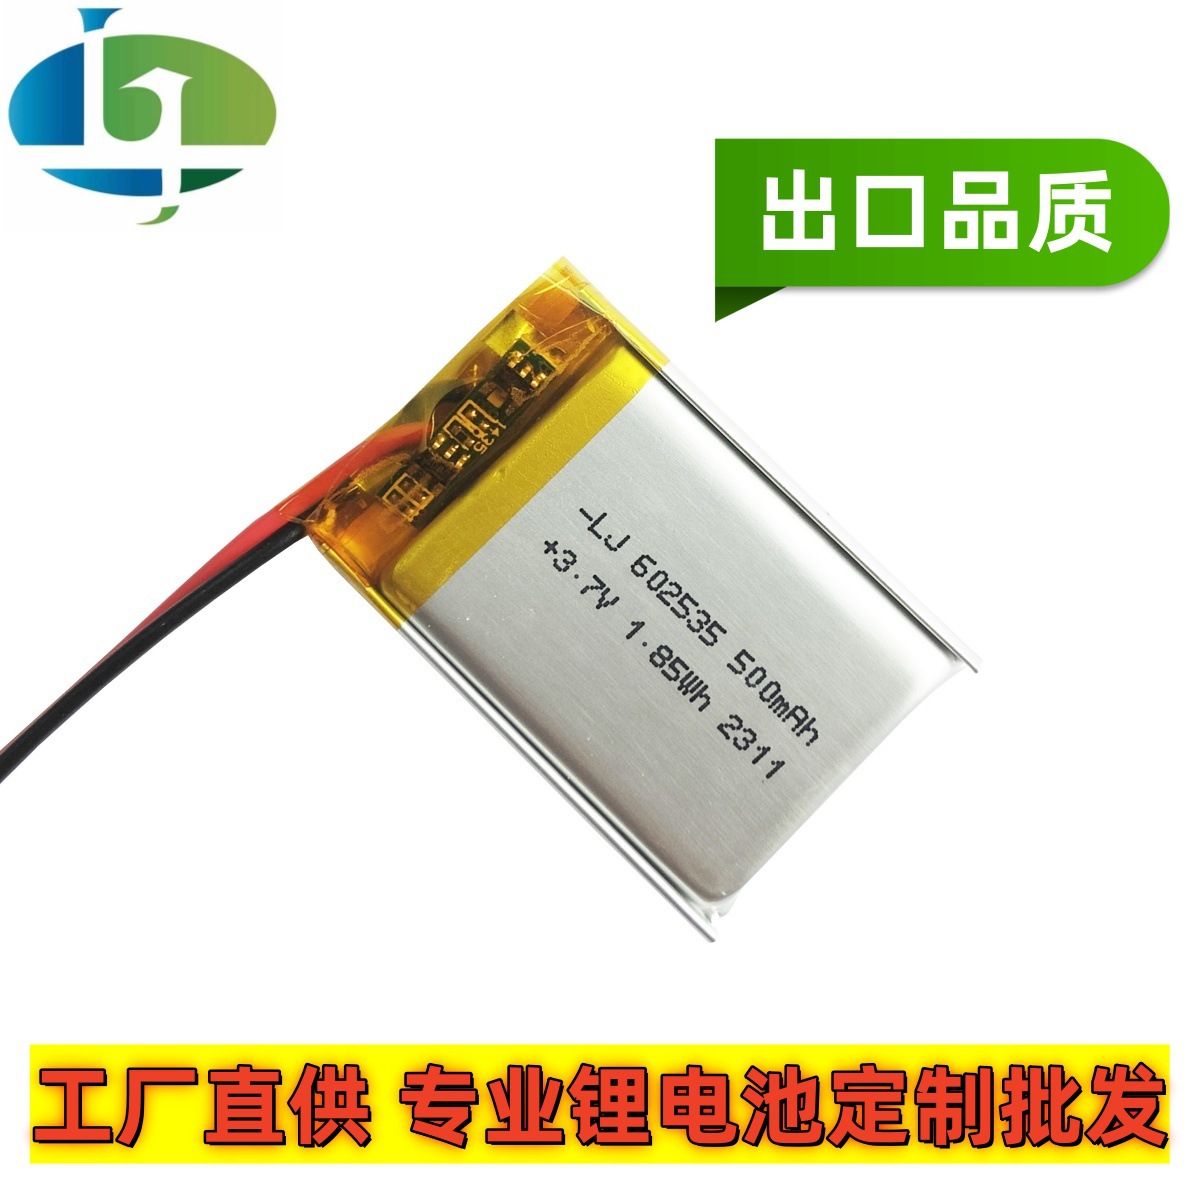 602535聚合物锂电池 3.7V 500mAh 感应灯 UV紫外线杀毒灯用锂电池